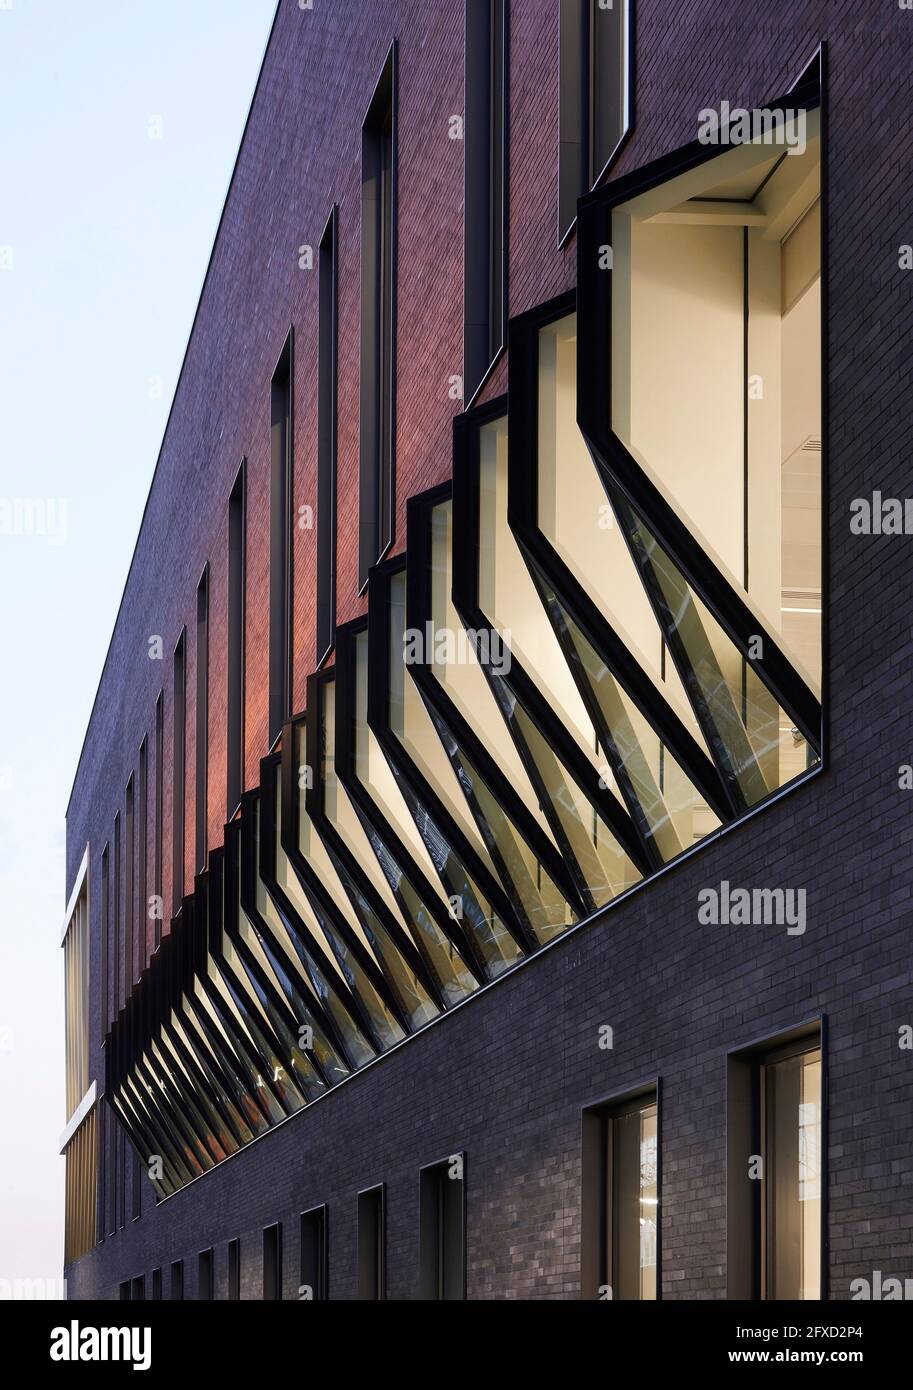 Dettaglio della facciata al tramonto con interni illuminati. Università di Birmingham, Collaborative Teaching Laboratory, Birmingham, Regno Unito. Architetto: Sheppard Foto Stock